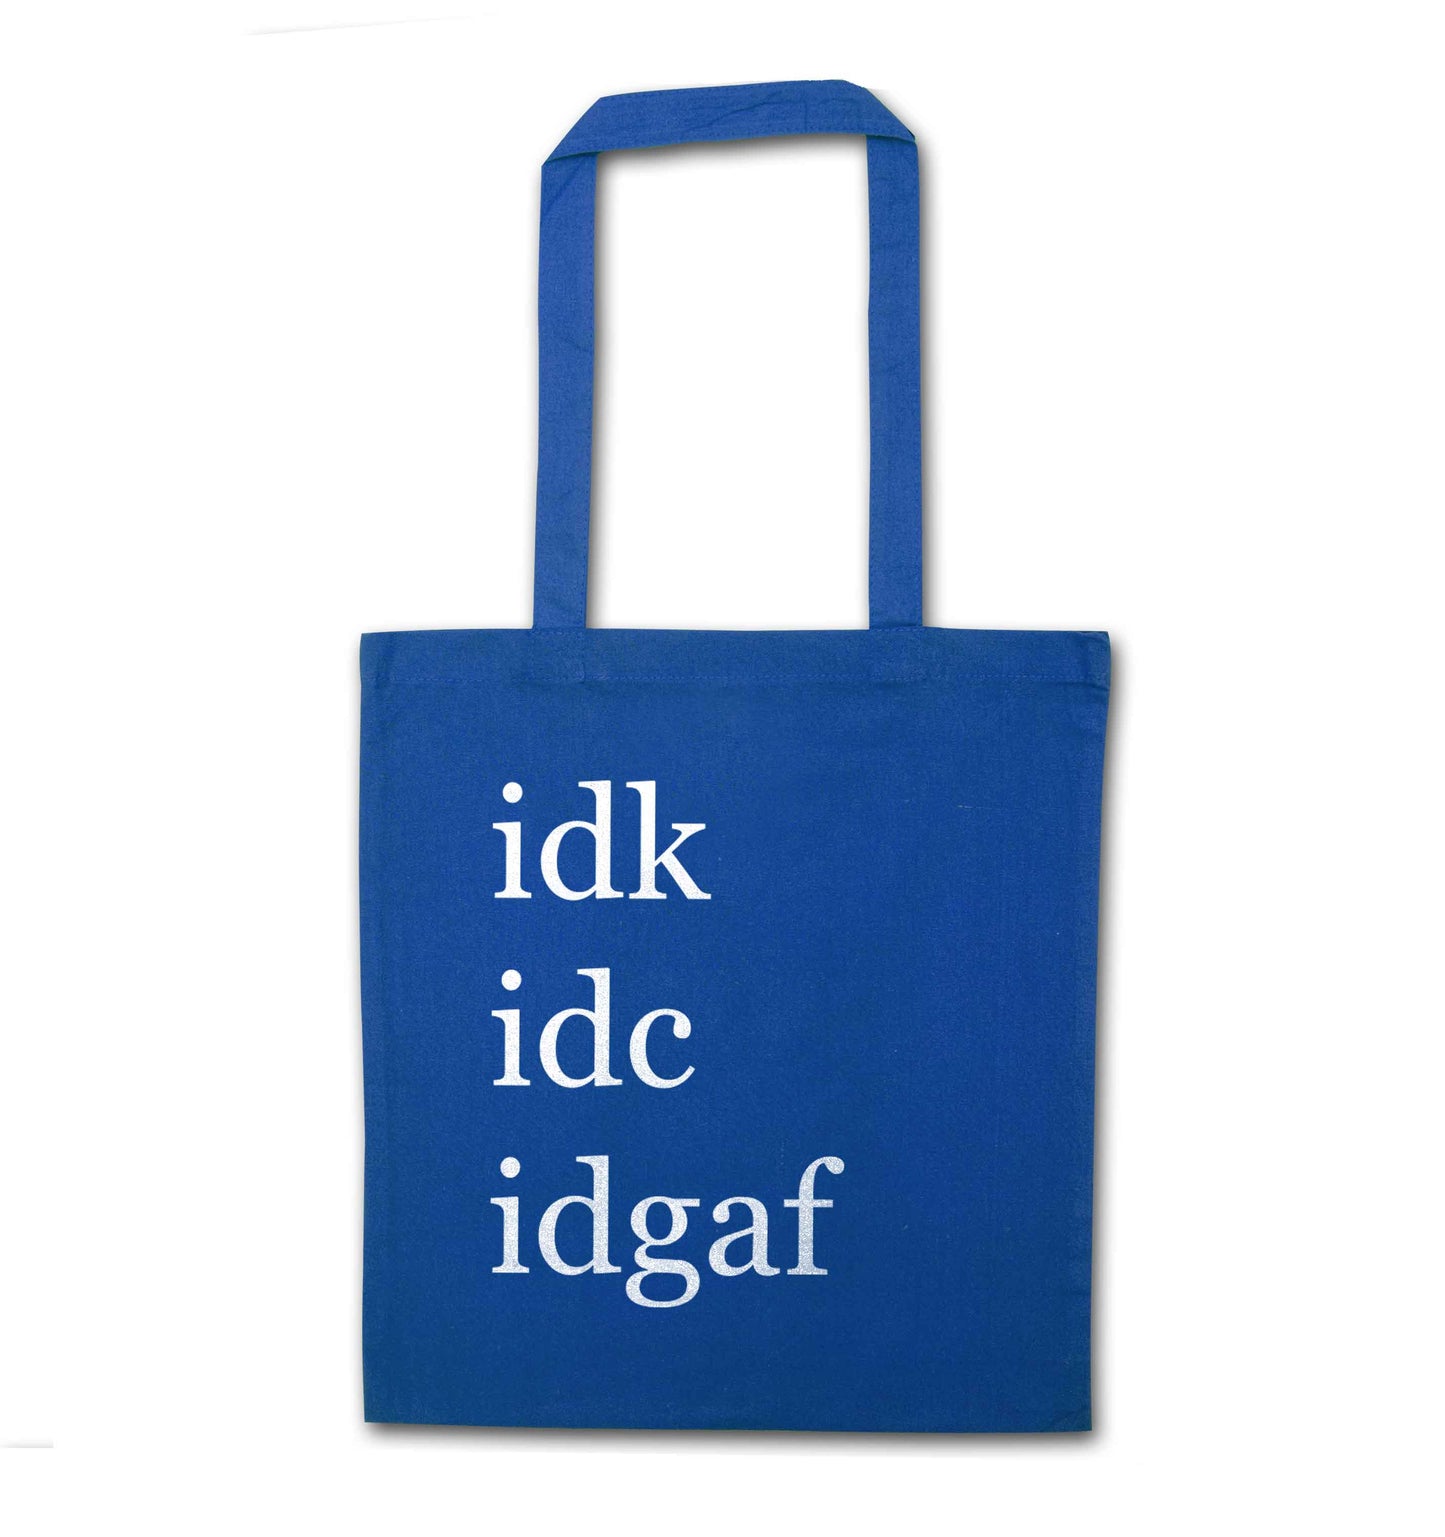 Idk Idc Idgaf blue tote bag